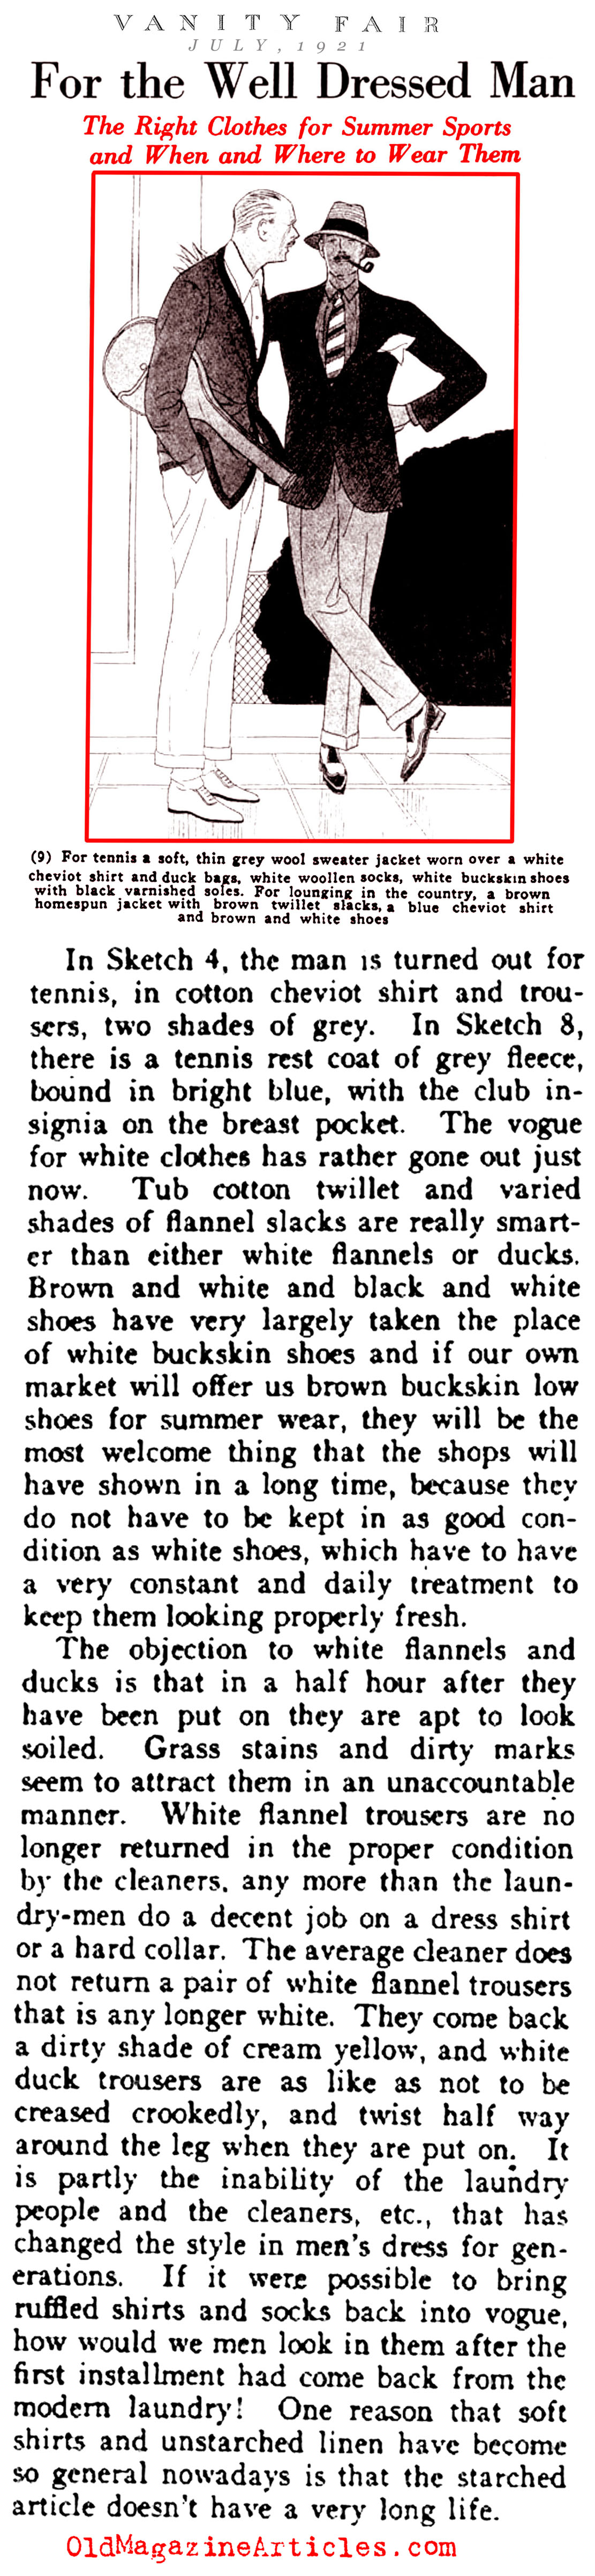 Men's Tennis Clothes (Vanity Fair Magazine, 1921)